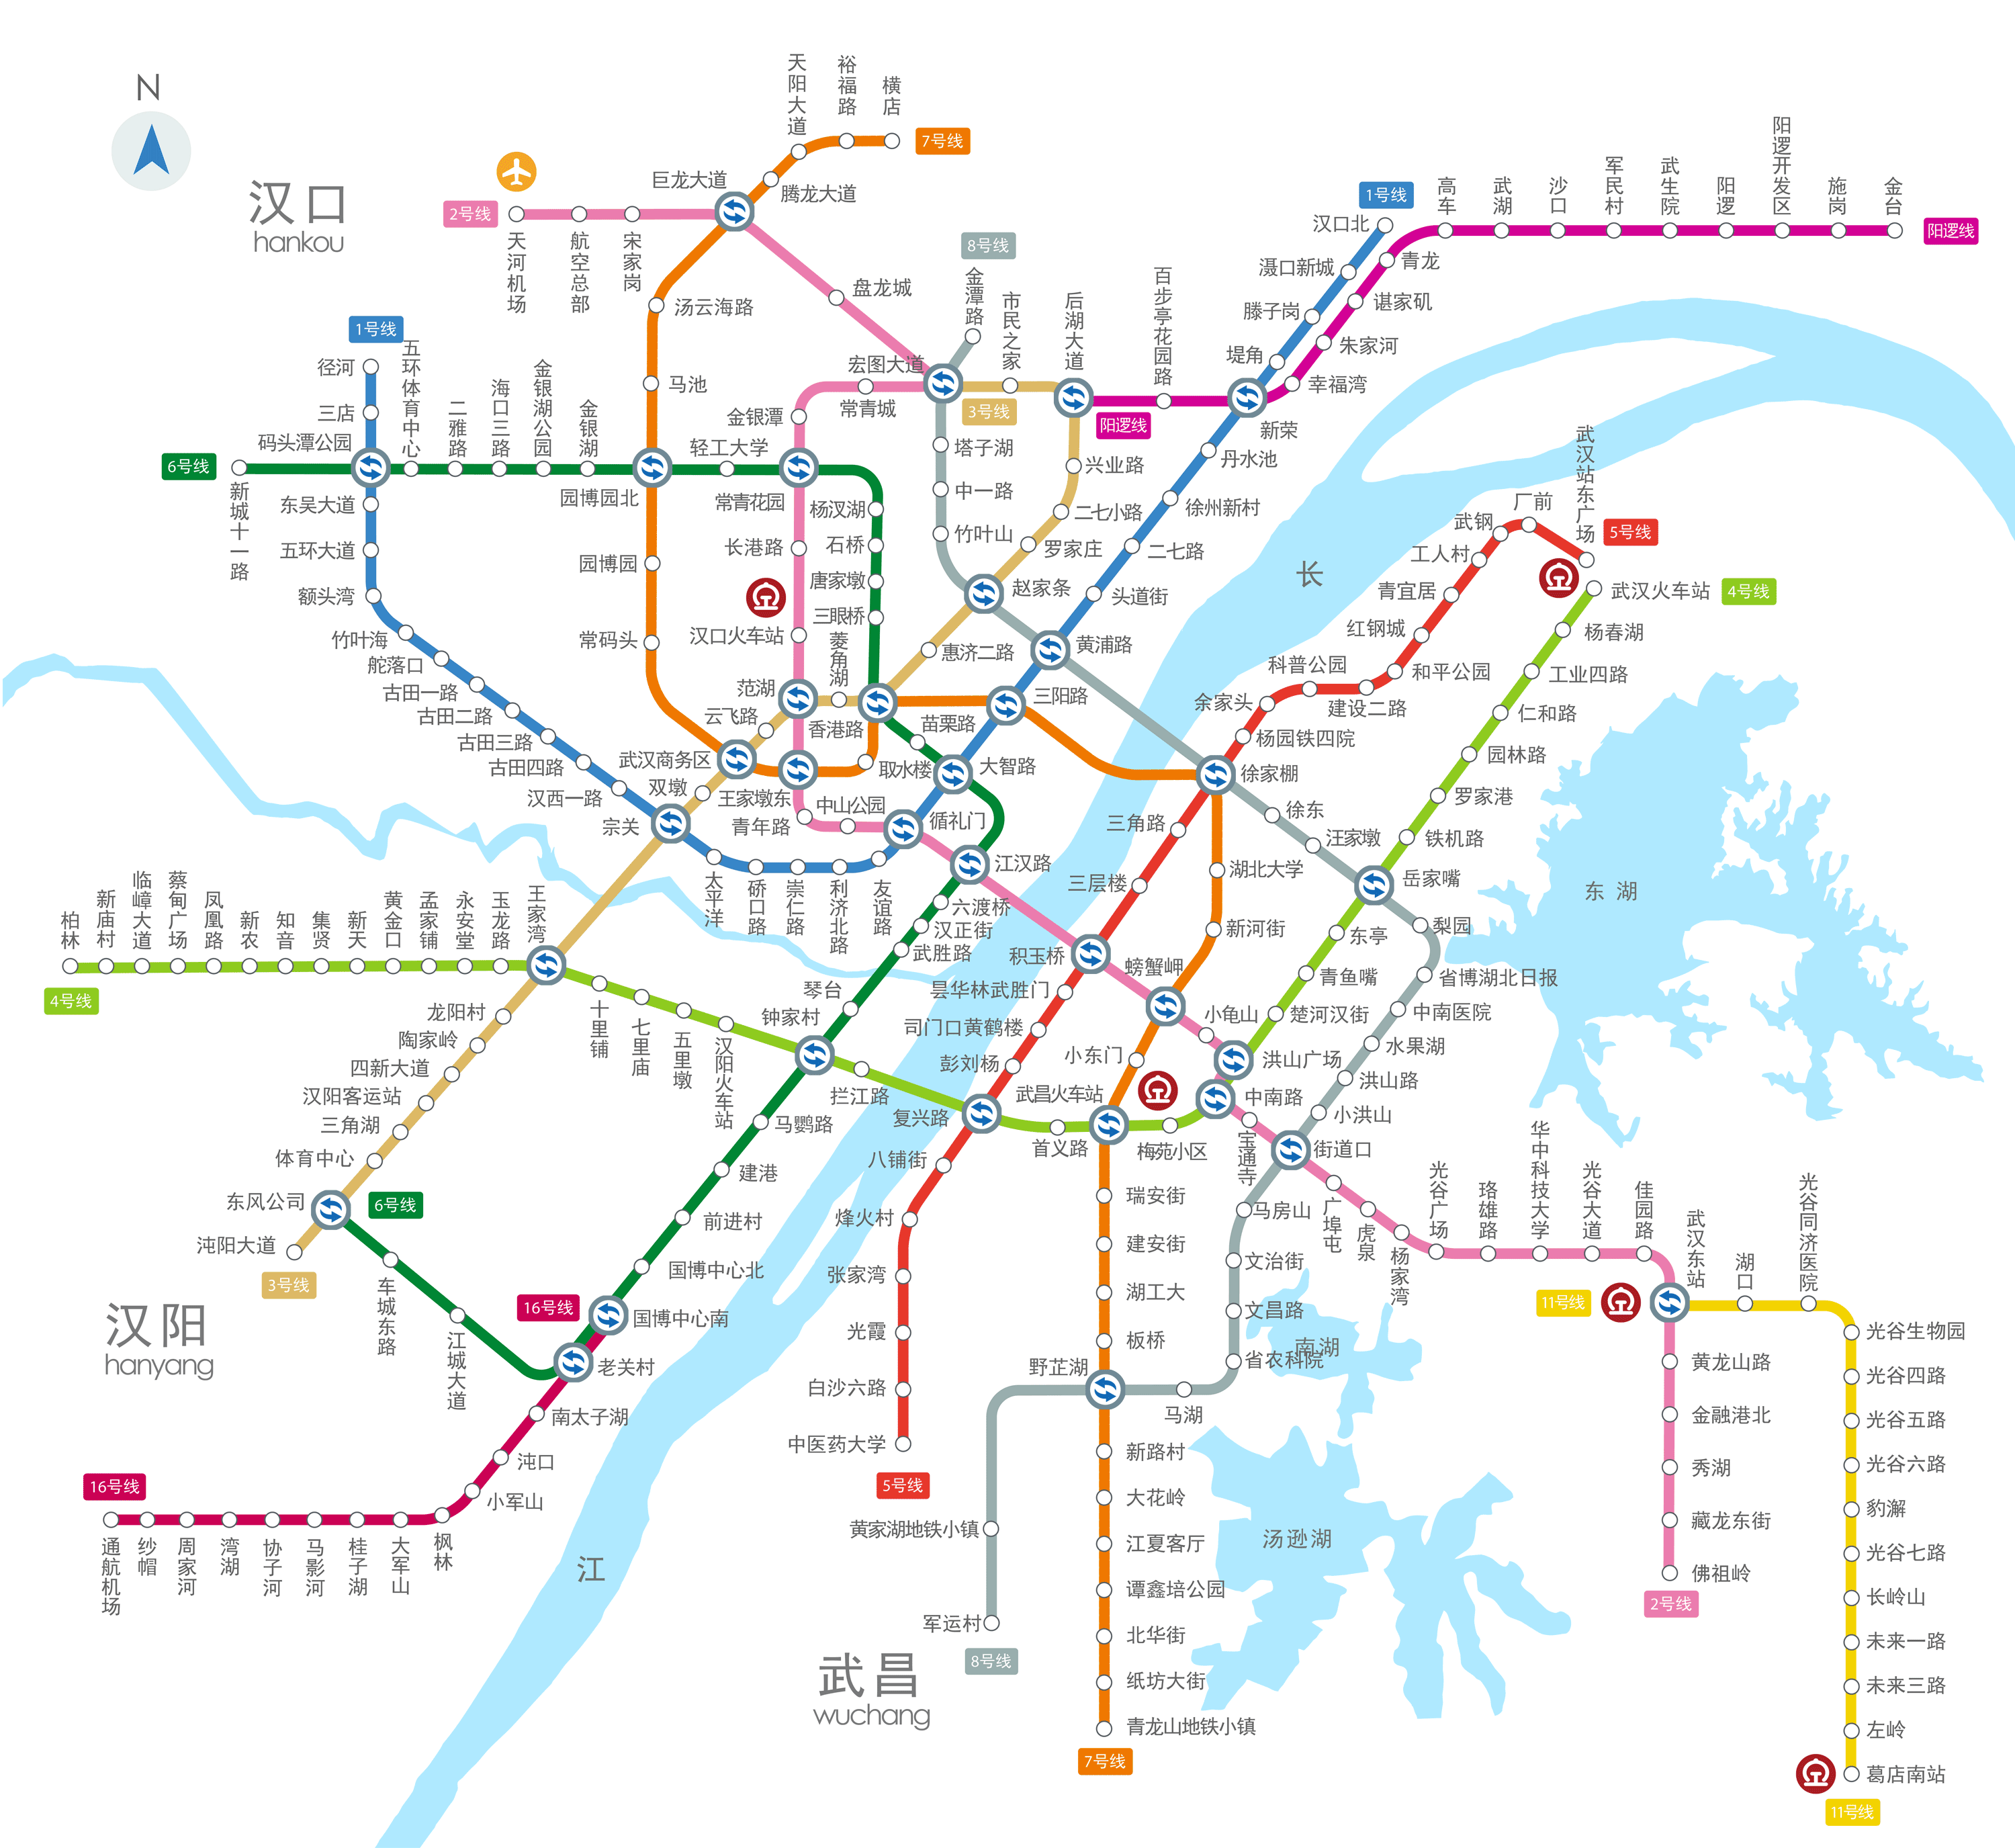 武汉地铁版图再次扩大,通车里程在全国名列前茅